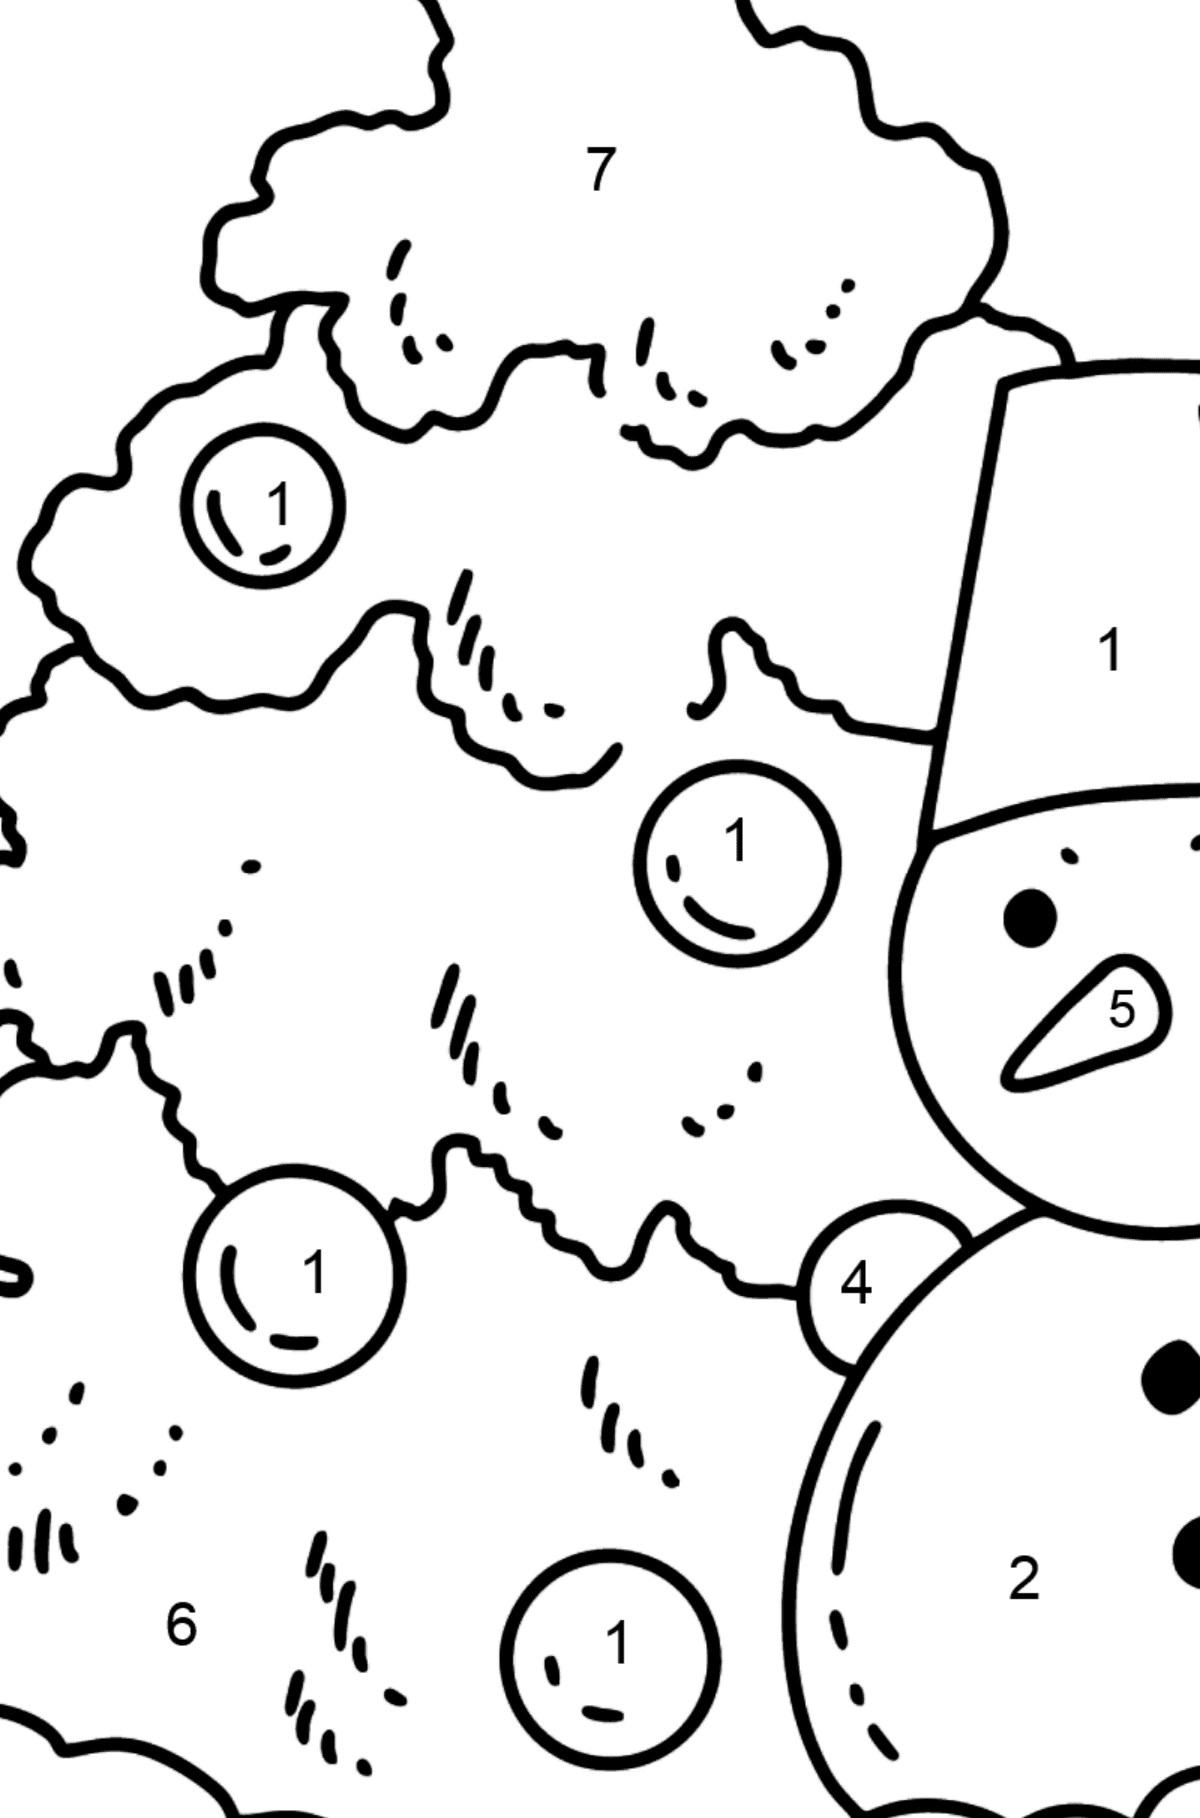 Coloriage - Arbre de Noël et bonhomme de neige - Coloriage par Chiffres pour les Enfants